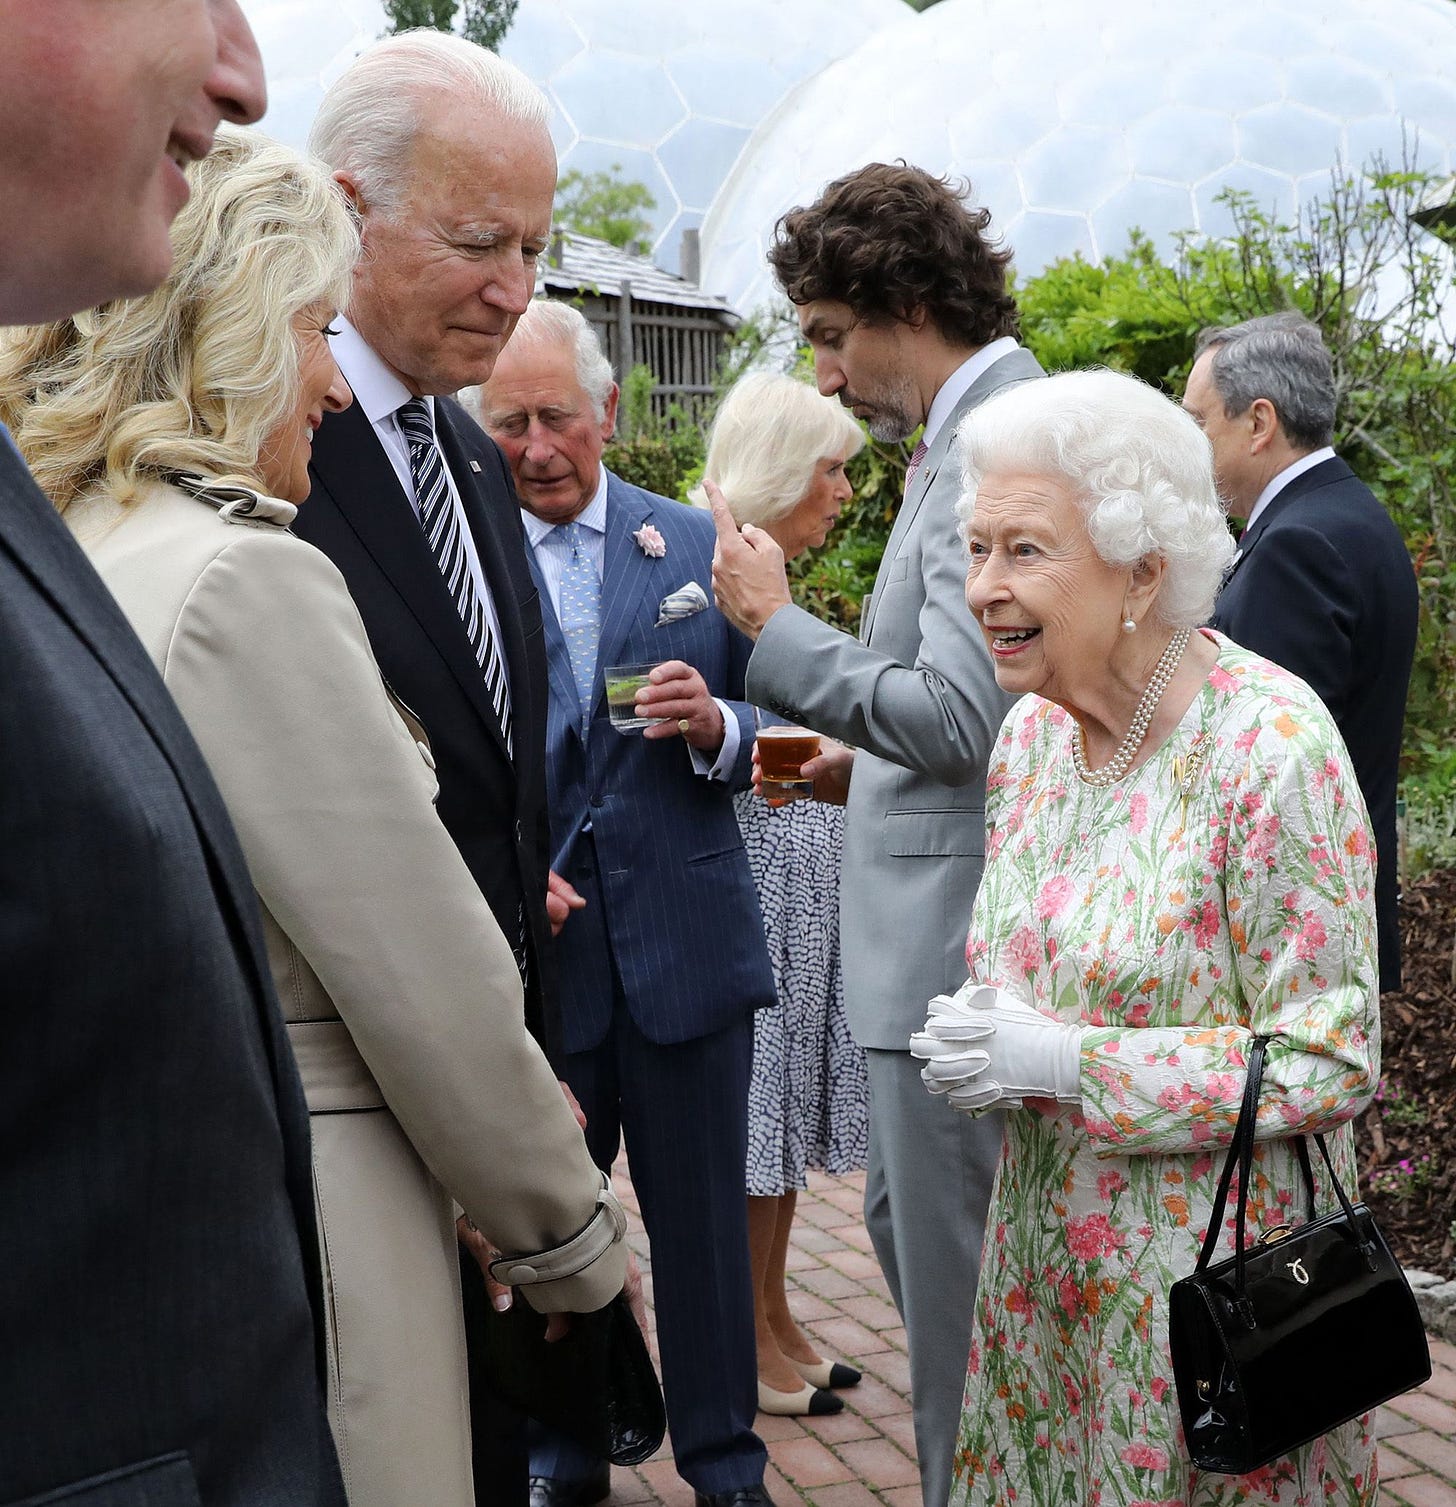 President Biden meets Queen Elizabeth II at G7 reception